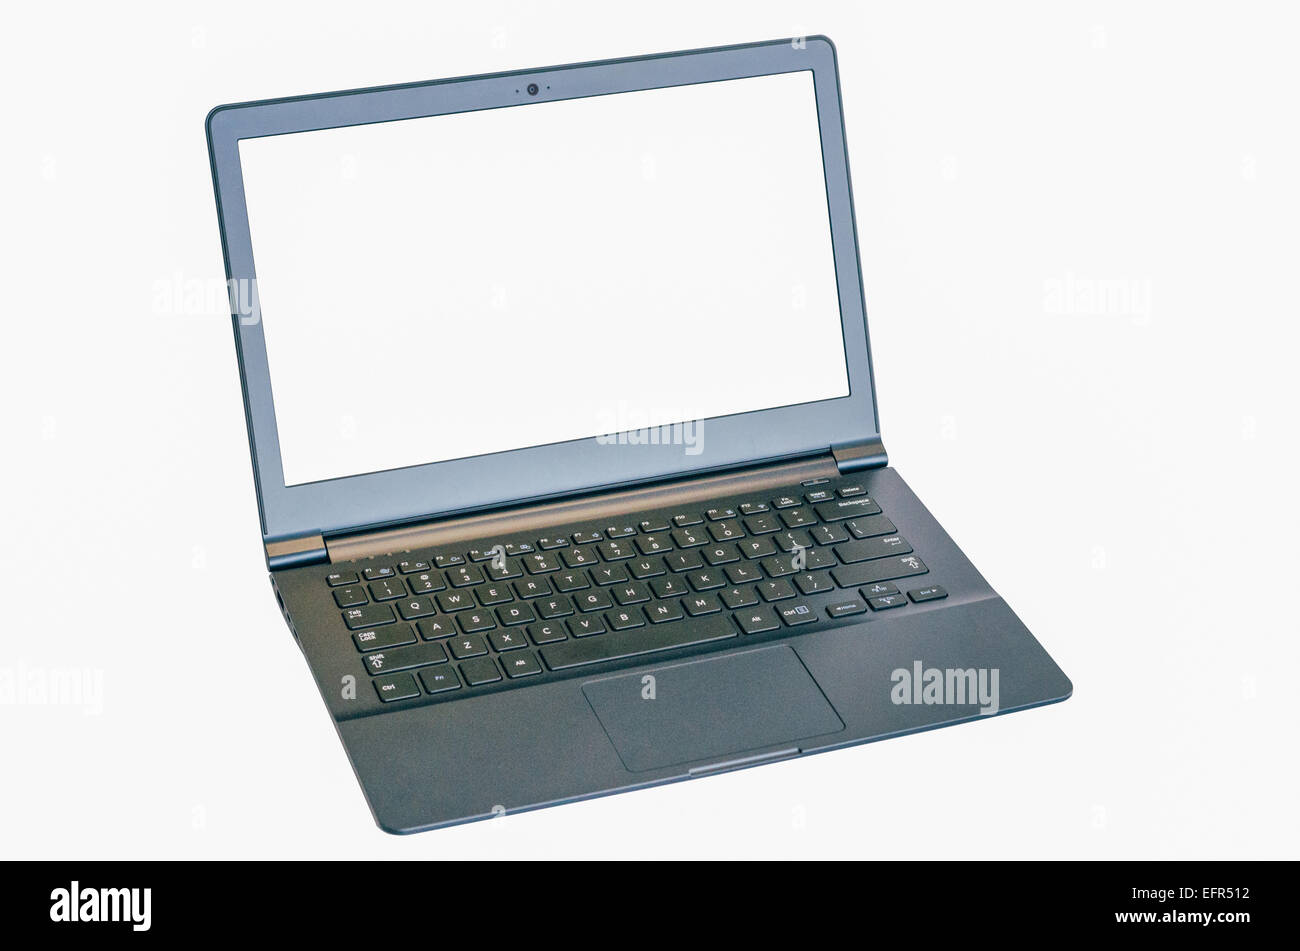 Aislados ultrabook delgado portátil con dos trazados de recorte, uno para el portátil de pantalla. Foto de stock